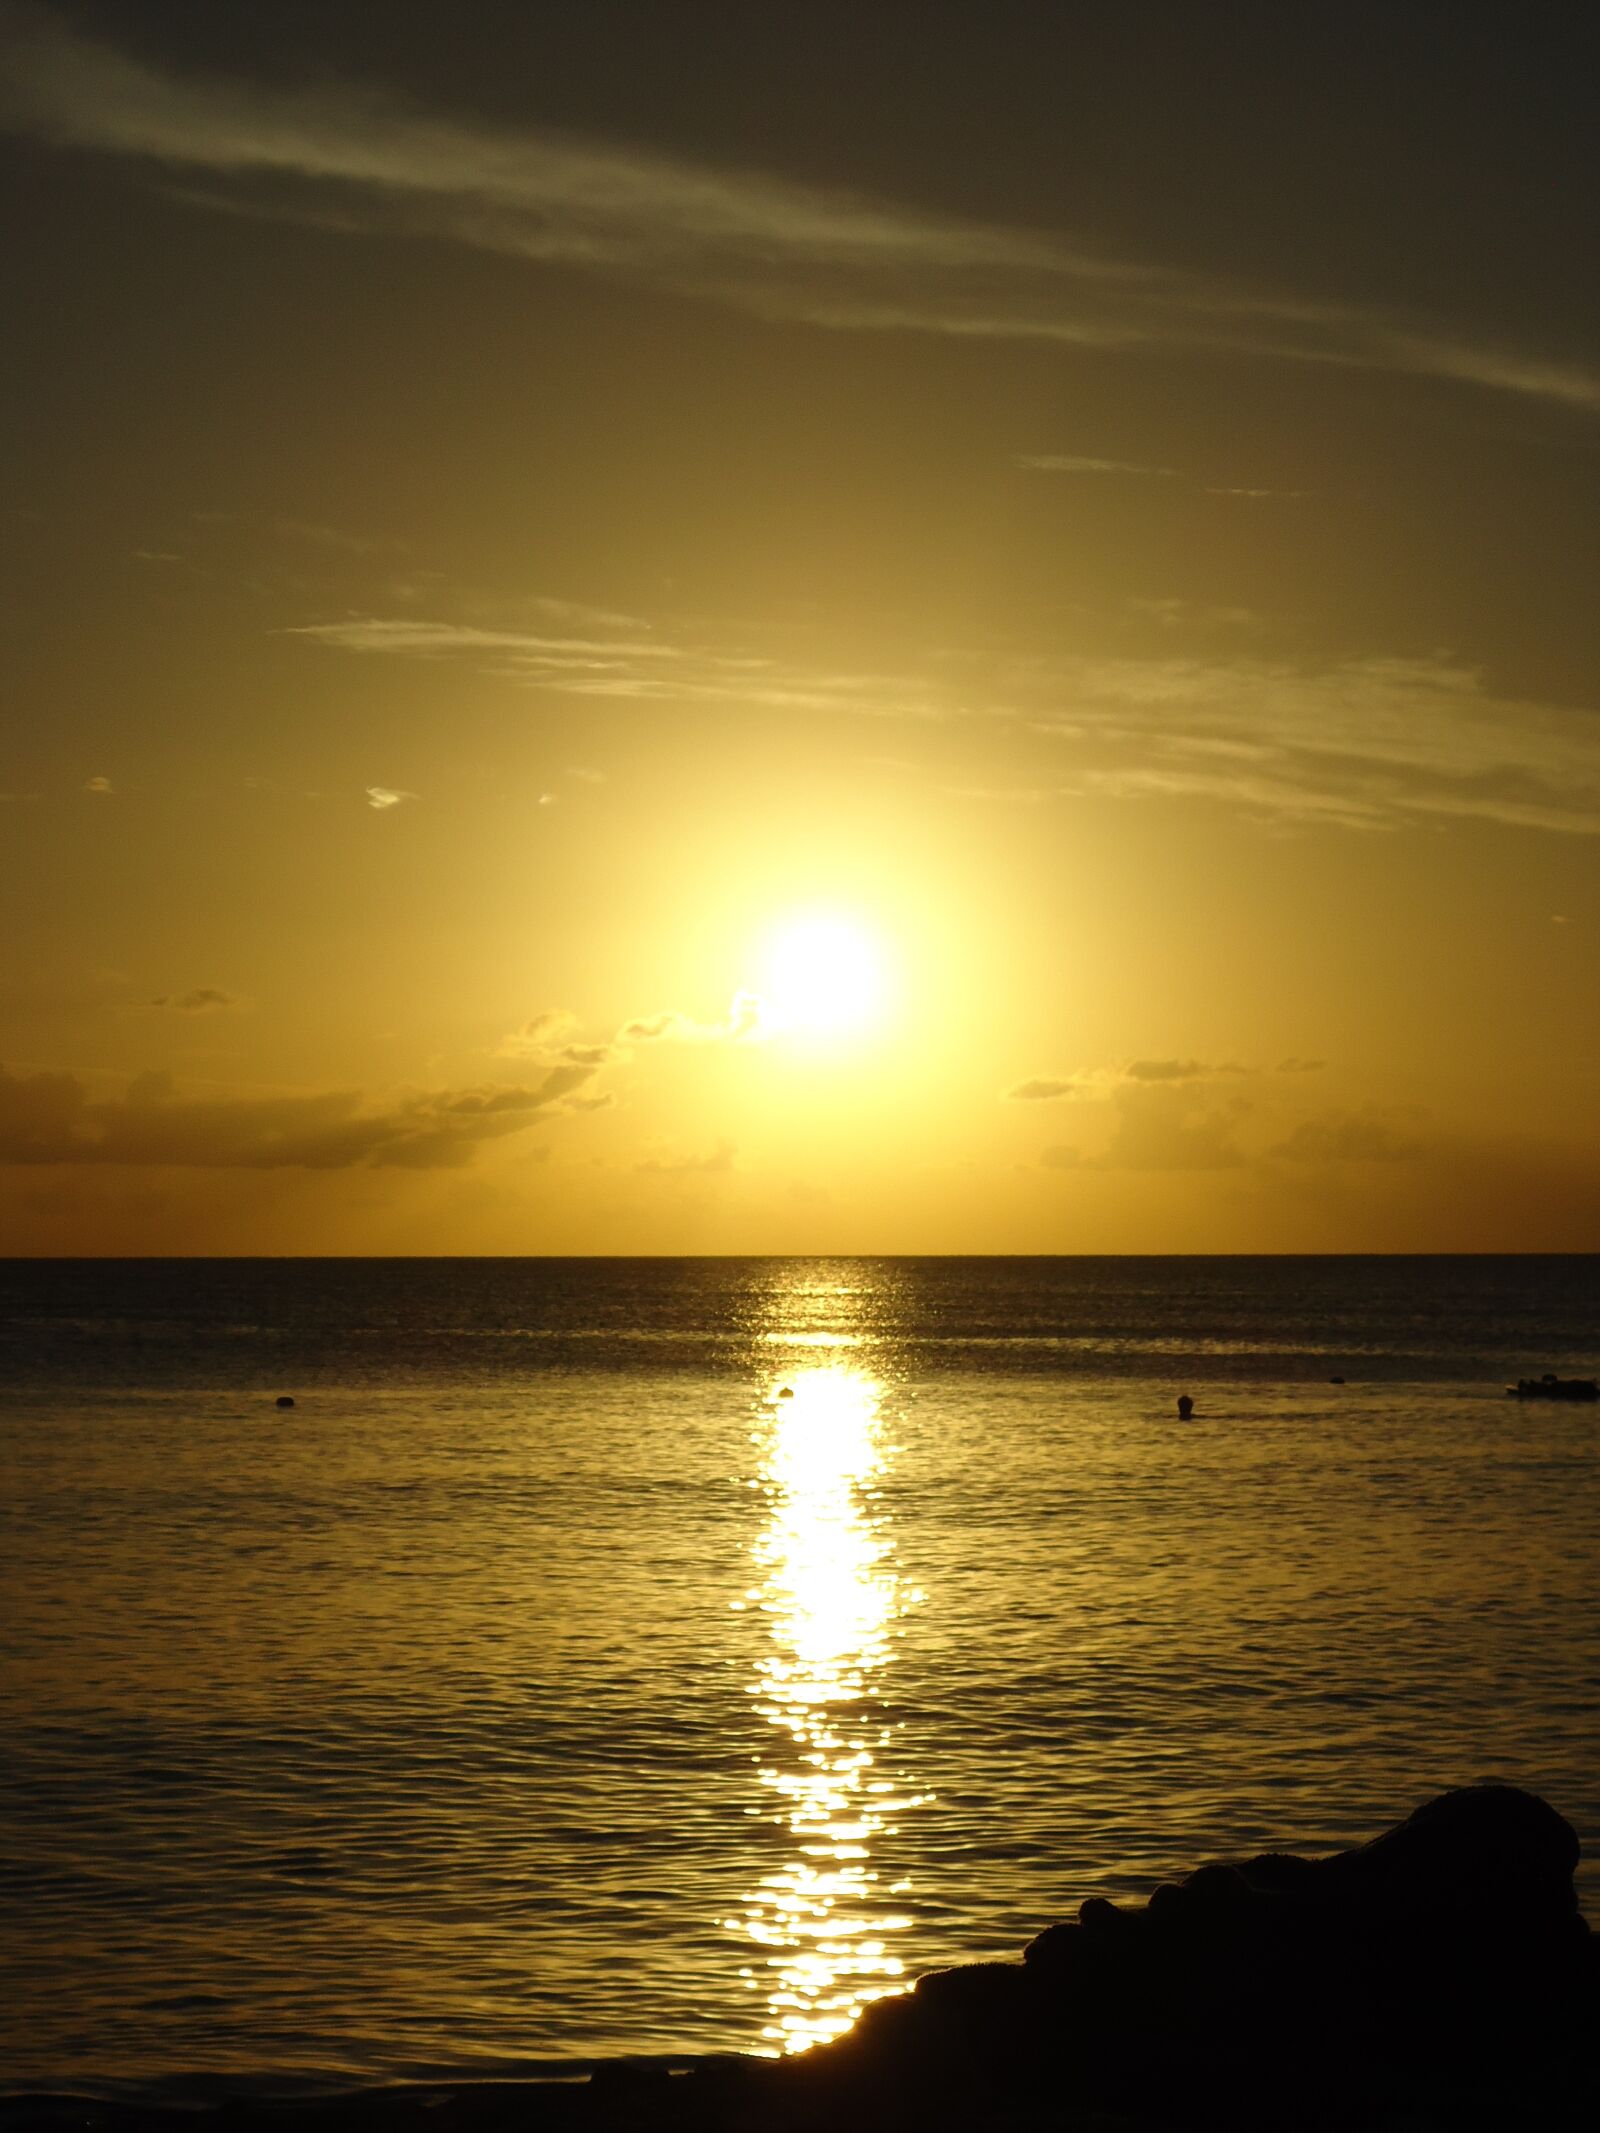 Sony Cyber-shot DSC-W530 sample photo. Dominican, sun, sunset photography